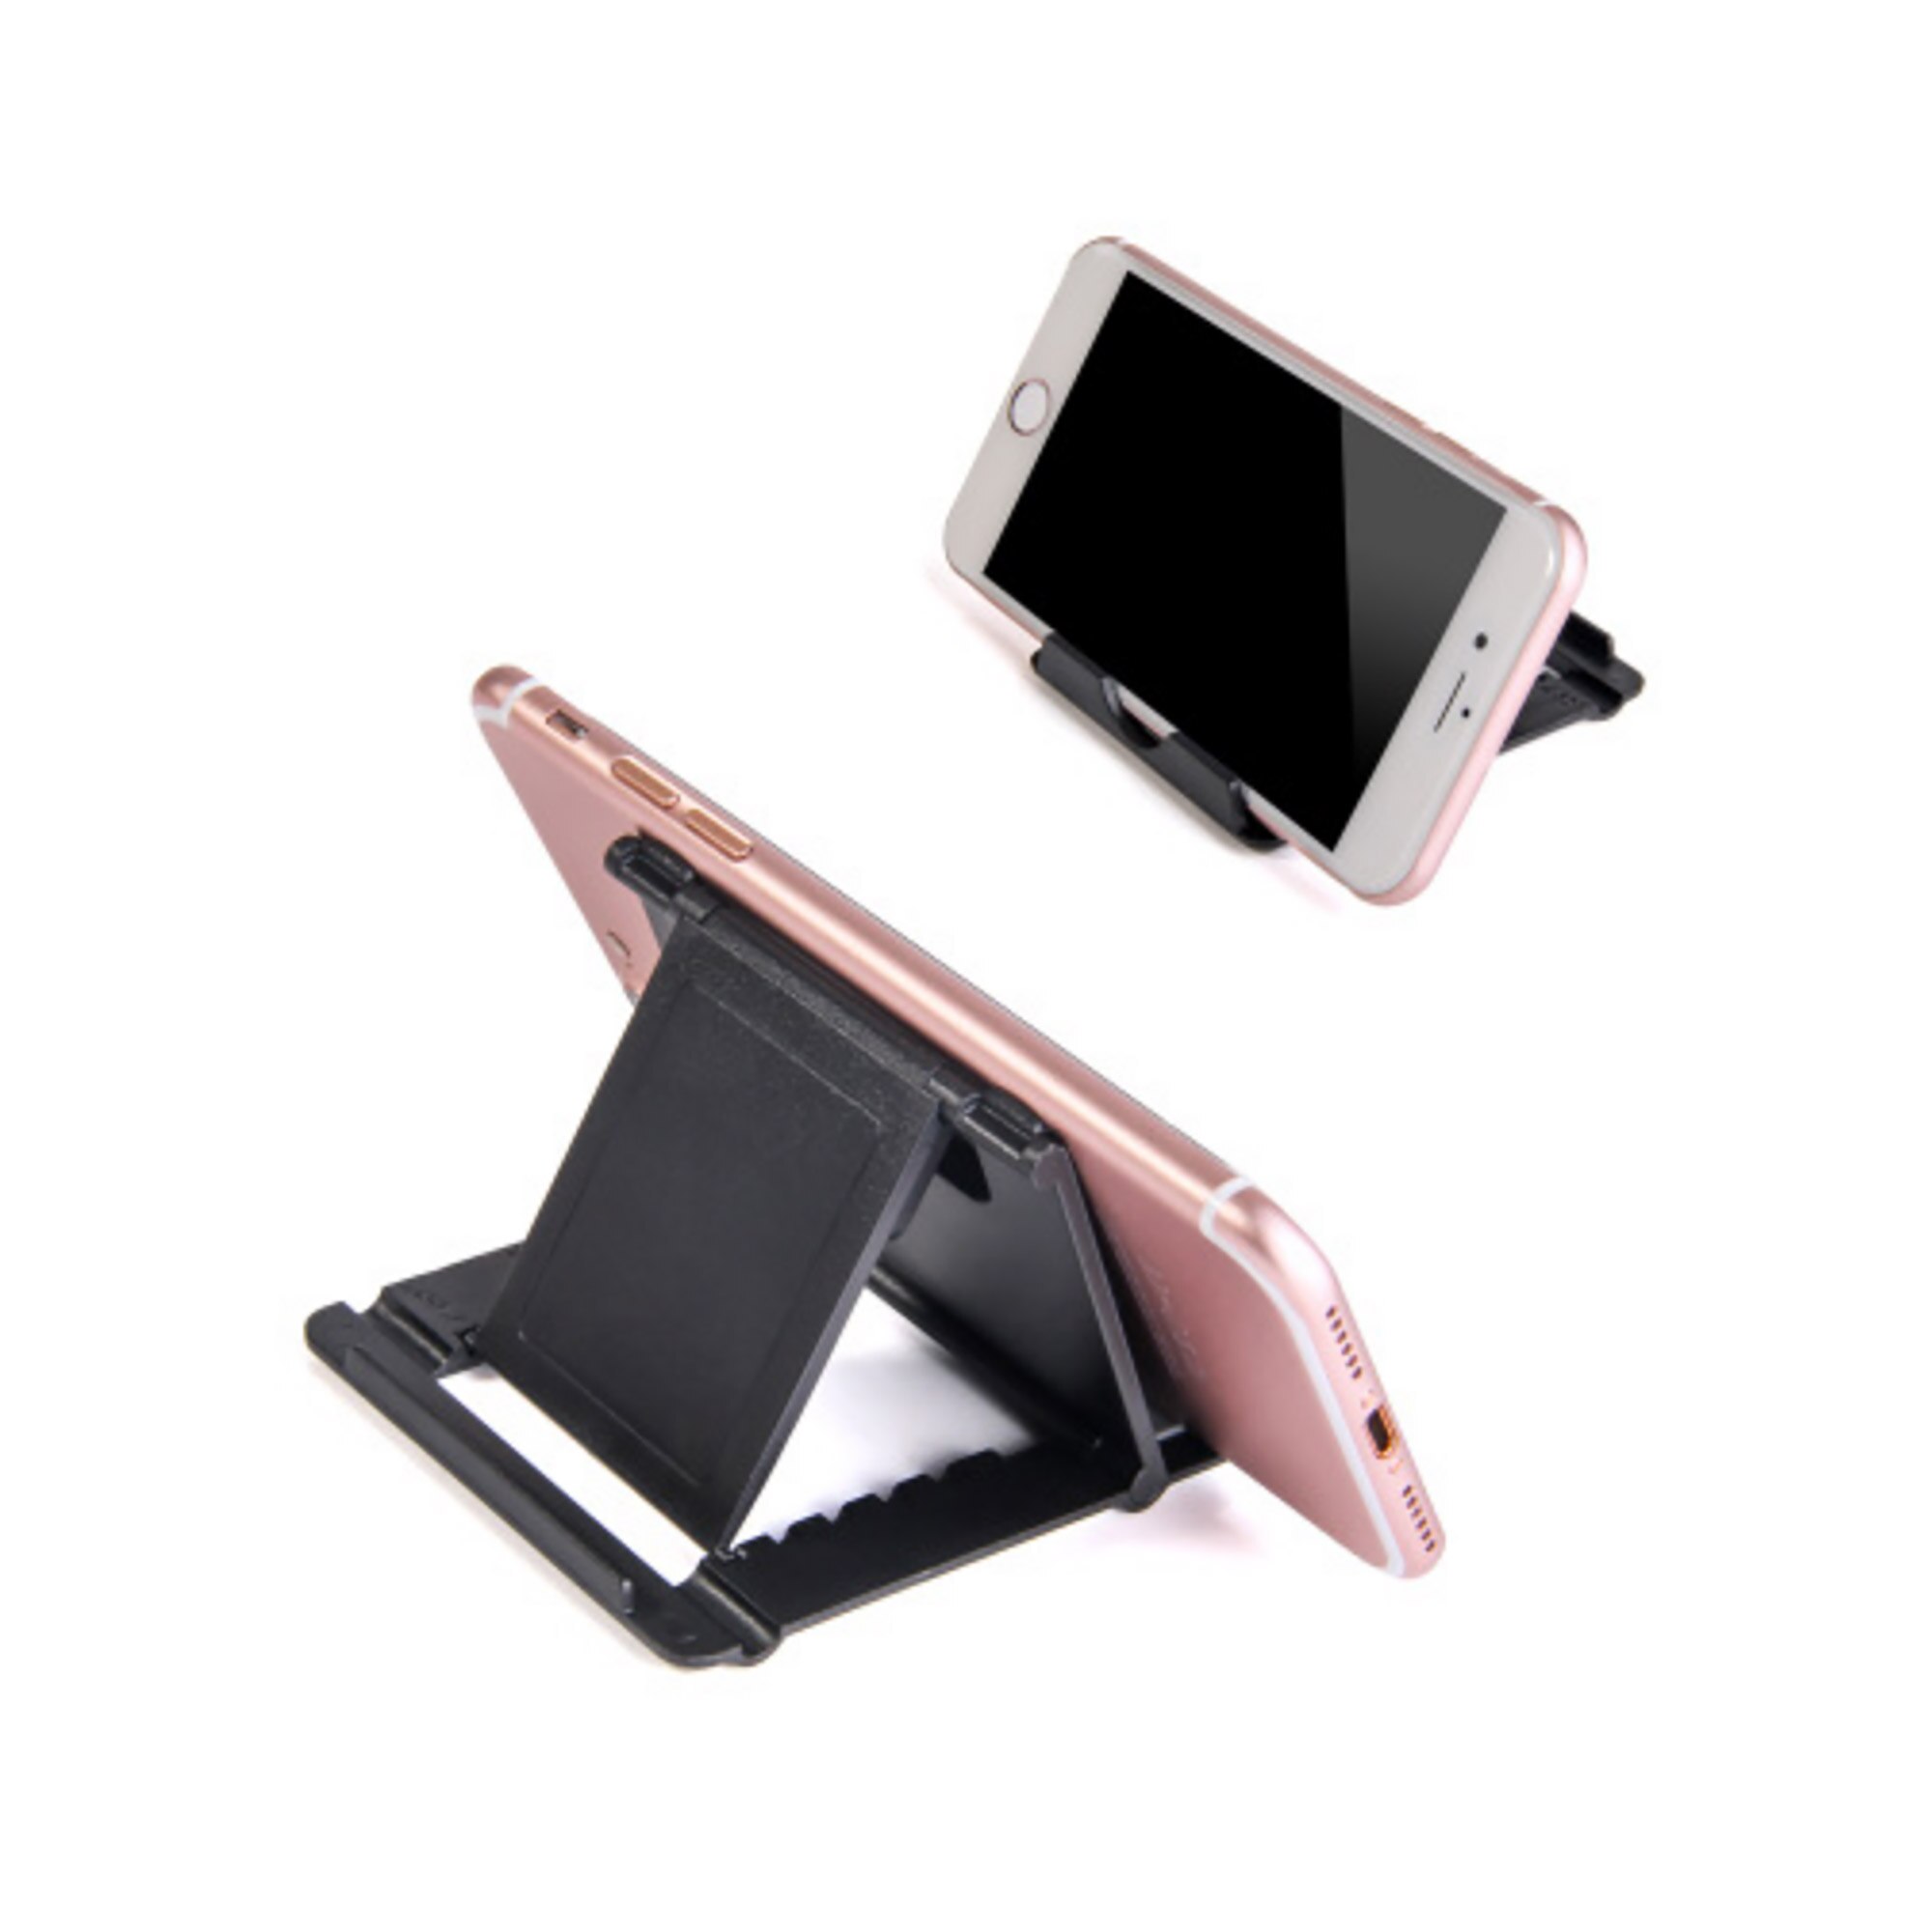 2 Stuks Verstelbare Tablet Flexibele Telefoon Houder Voor Iphone Universele Opvouwbare Desktop Stand Voor Telefoon Tablet Stand